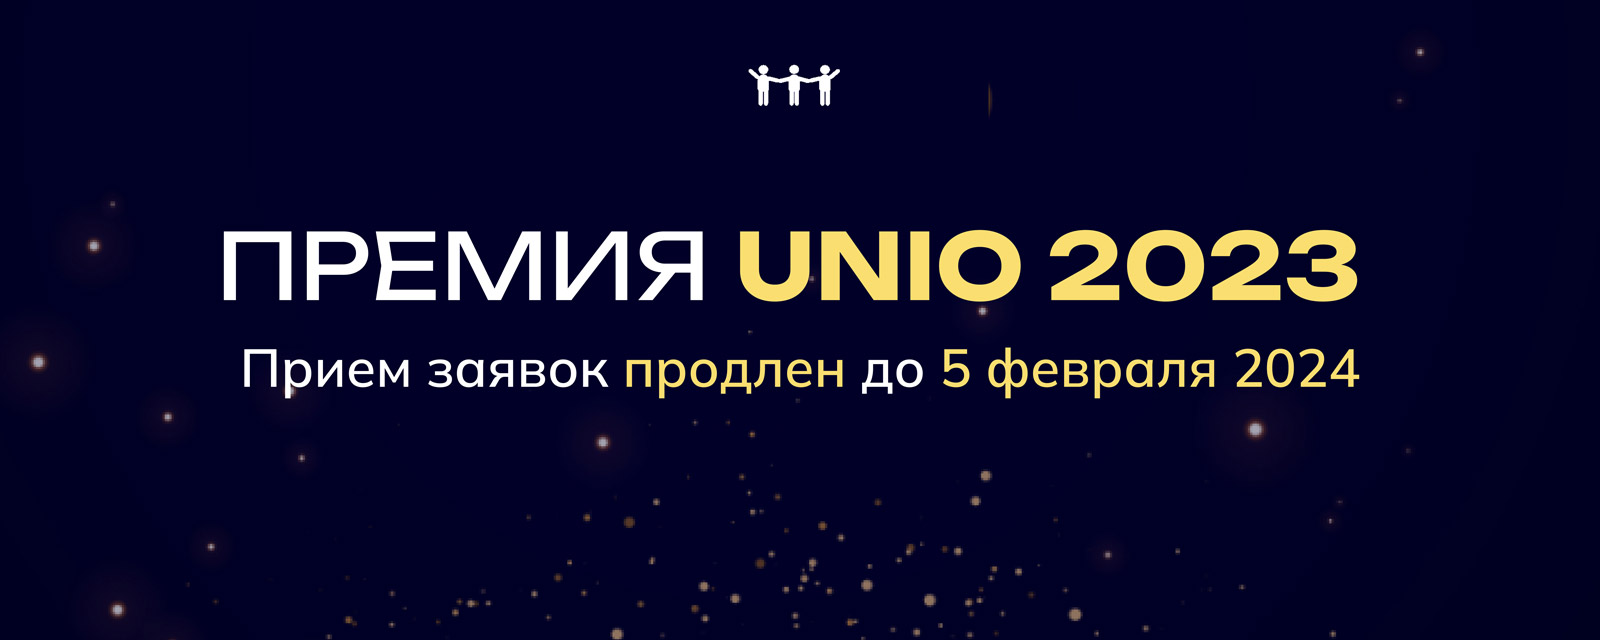 Срок приема заявок на участие в премии UNIO продлен до 5 февраля